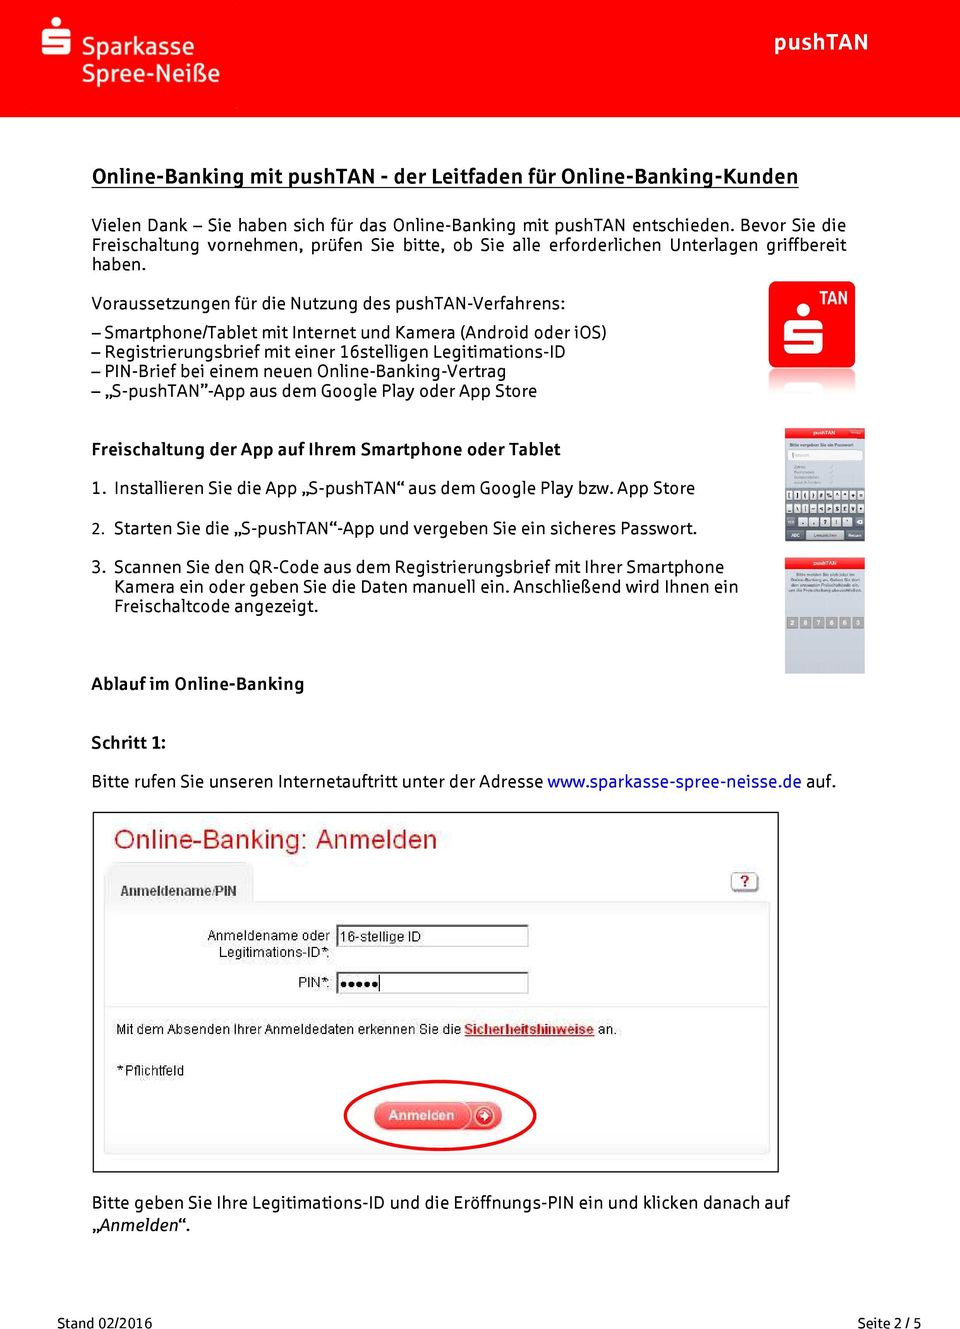 Voraussetzungen für die Nutzung des pushtan-verfahrens: Smartphone/Tablet mit Internet und Kamera (Android oder ios) Registrierungsbrief mit einer 16stelligen Legitimations-ID PIN-Brief bei einem